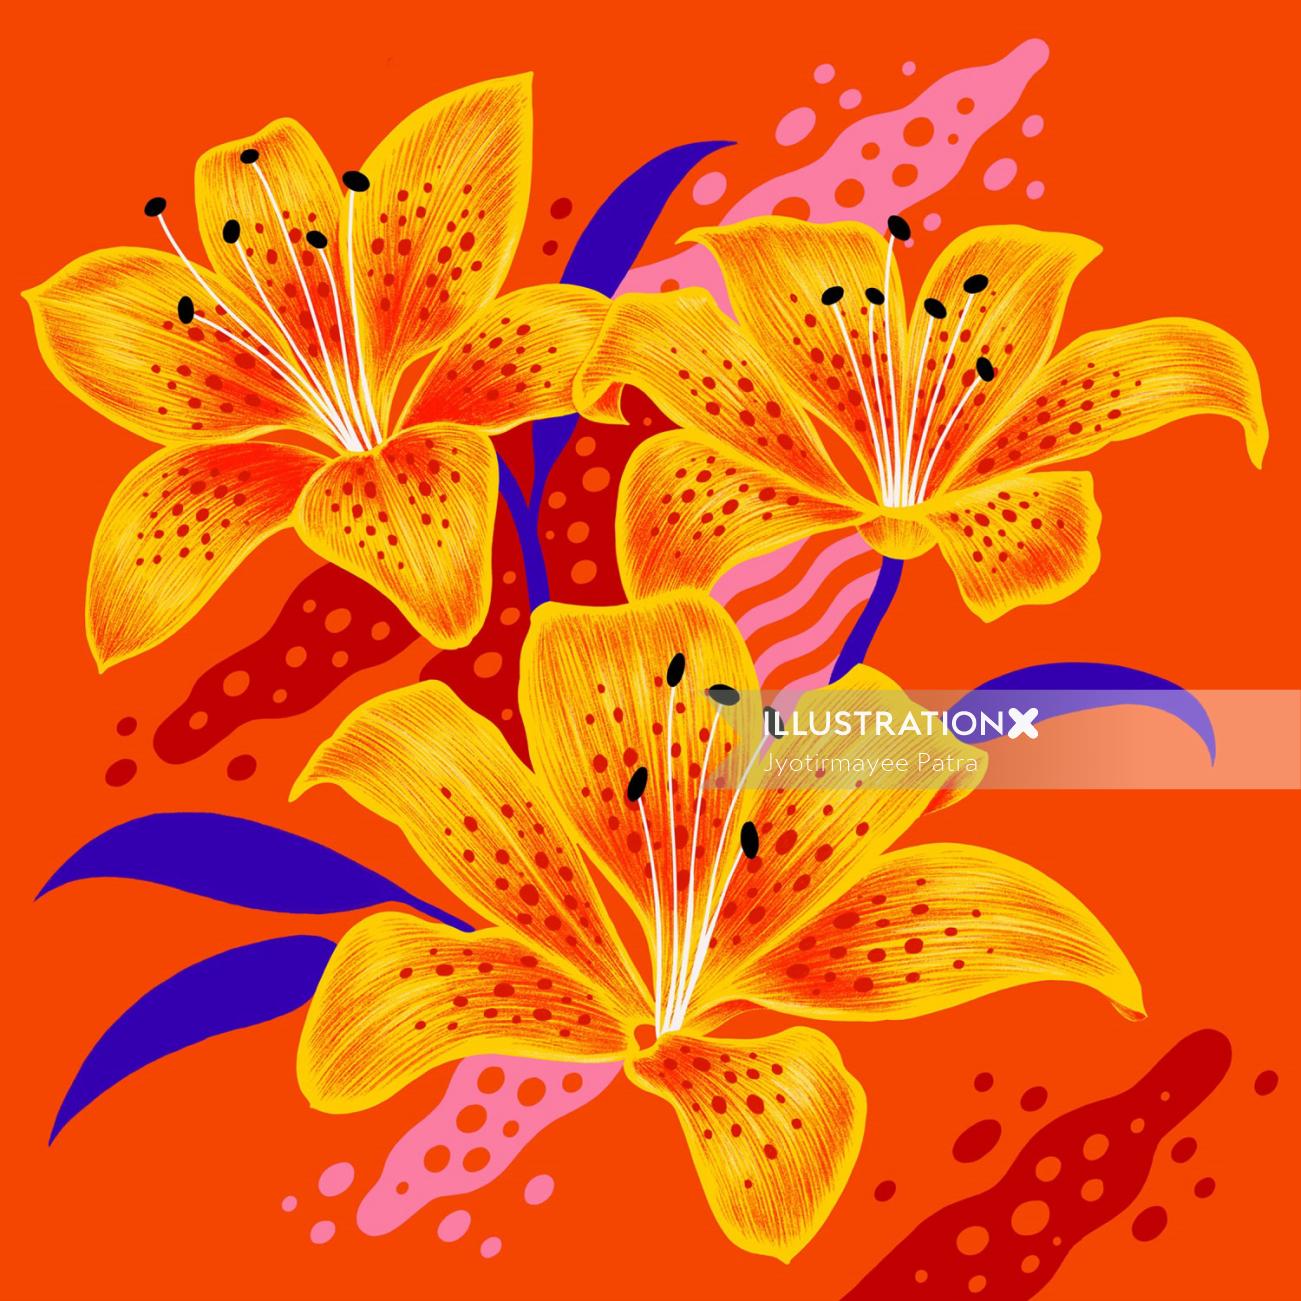 Tigerlily flores con colores vibrantes y texturas gráficas.